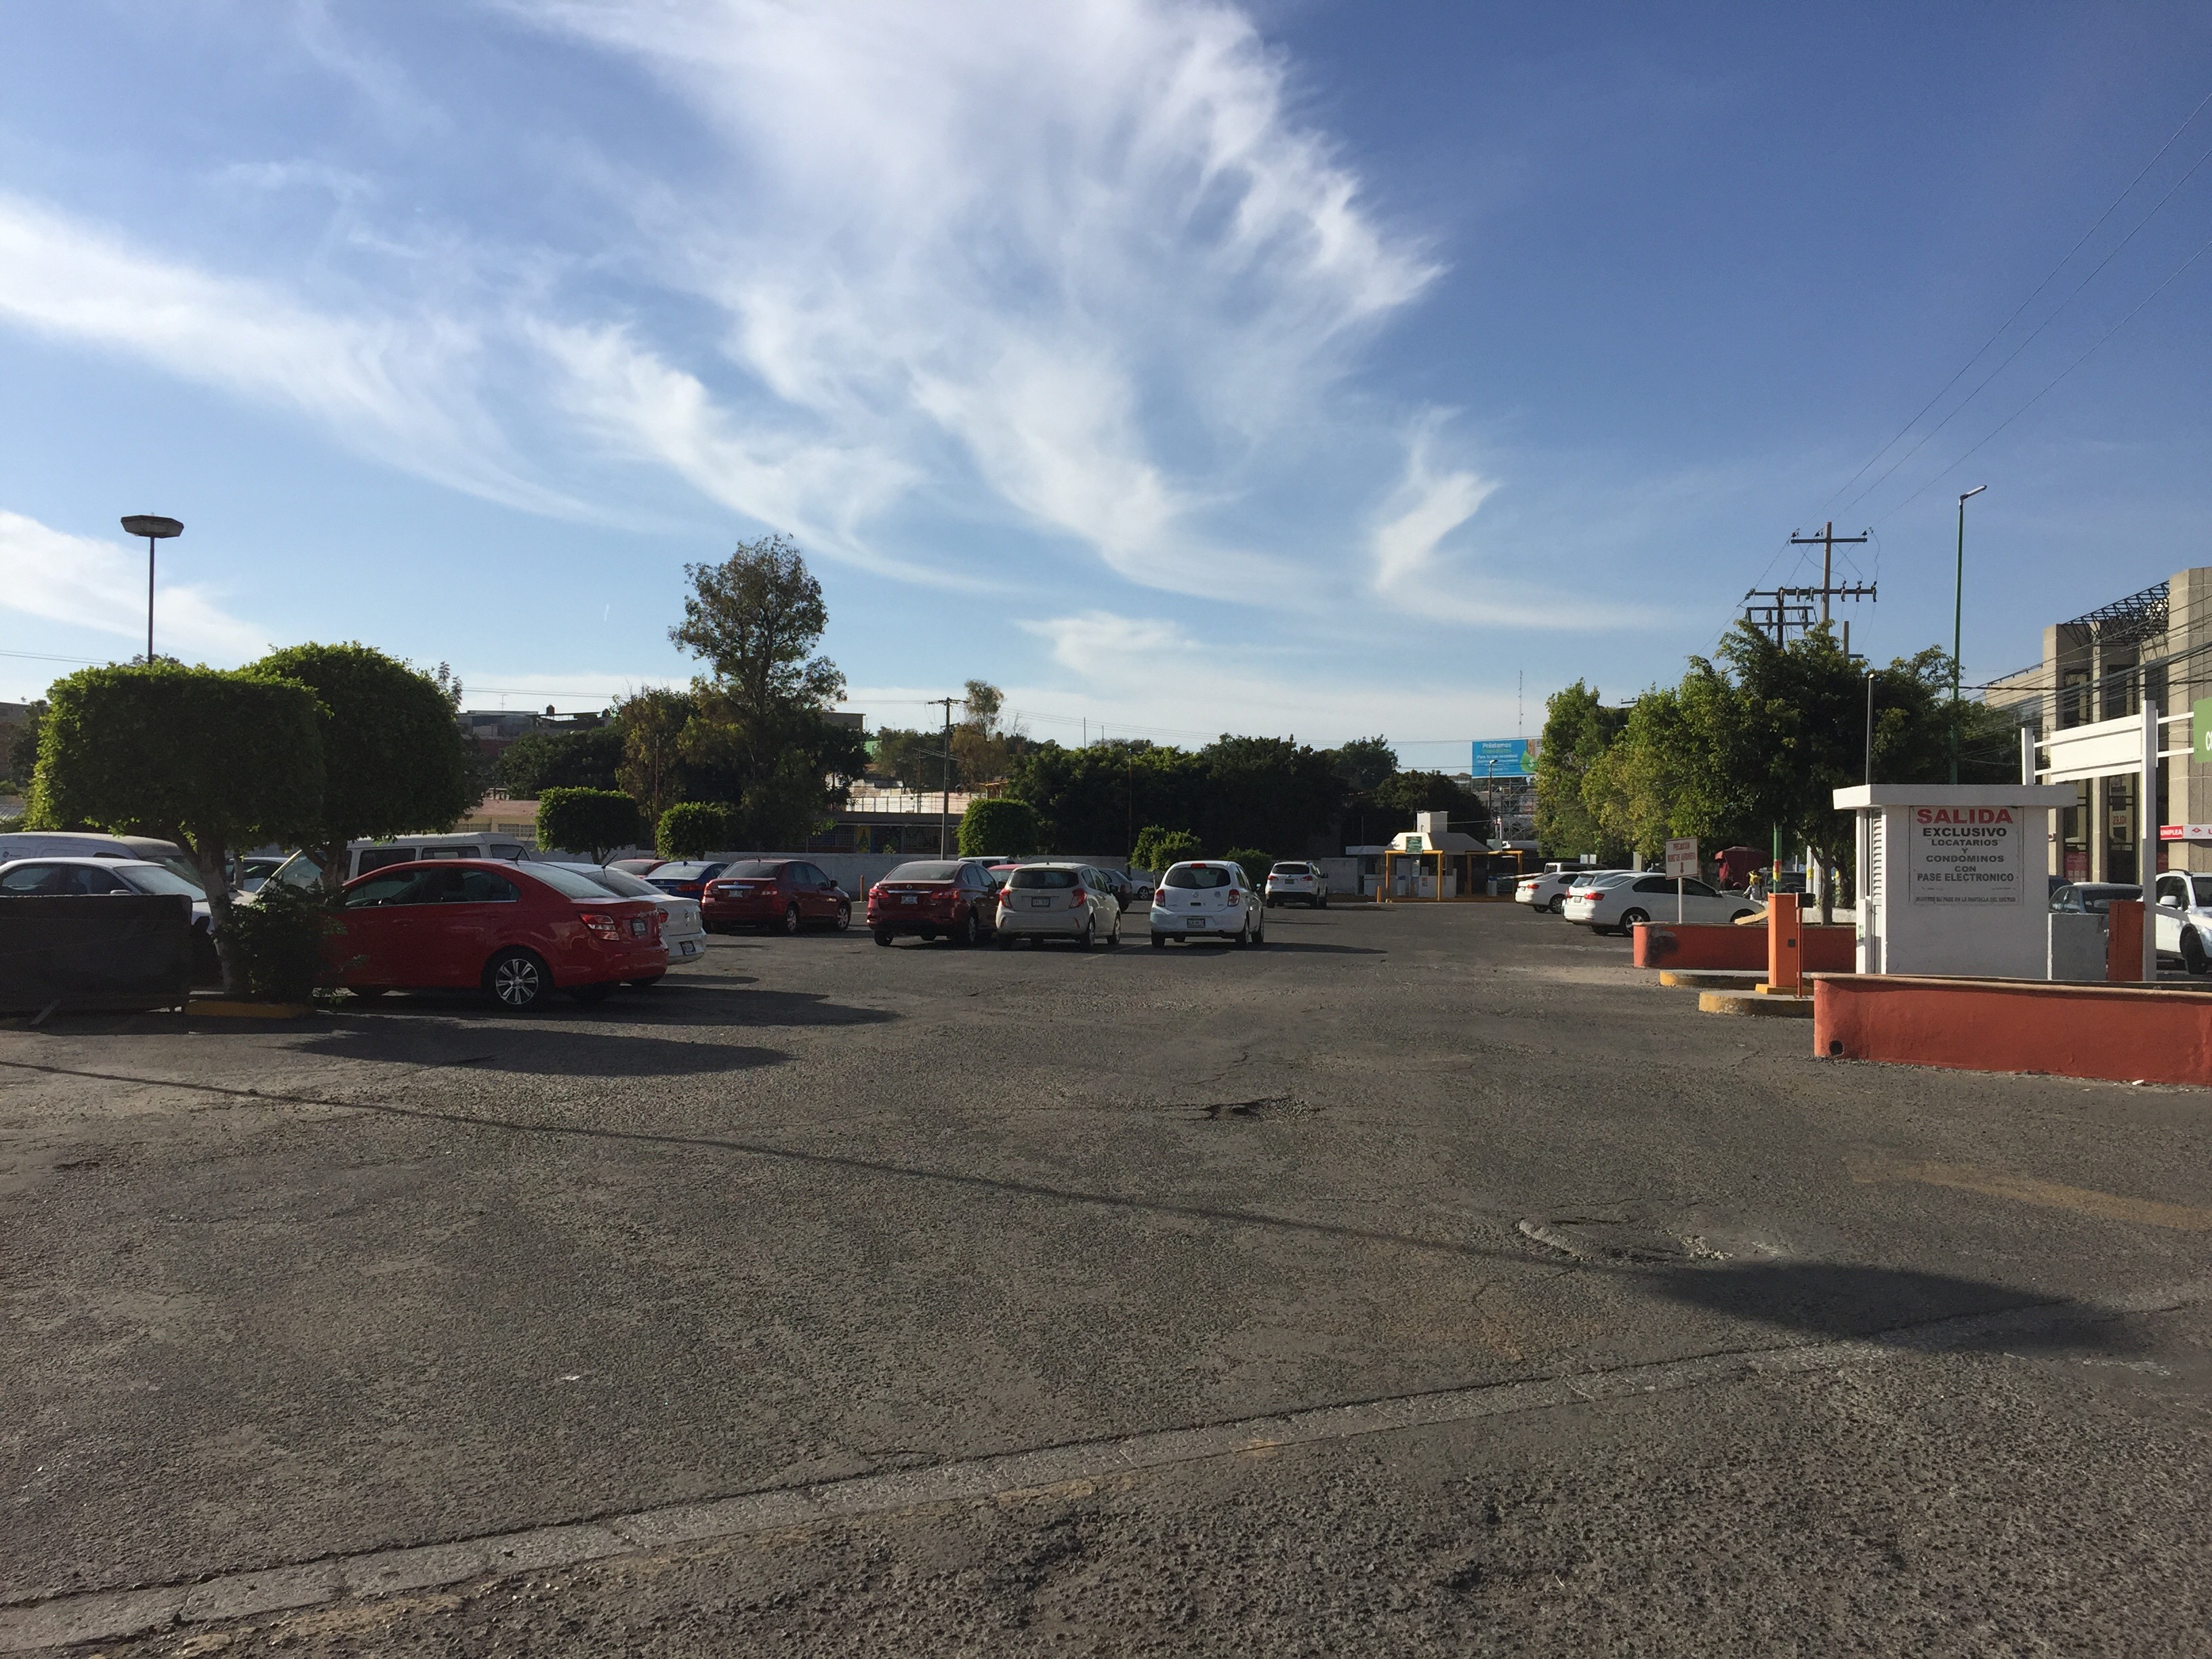  Empresa deberá devolver a locatarios estacionamiento en Plaza de las Américas: Apoderado